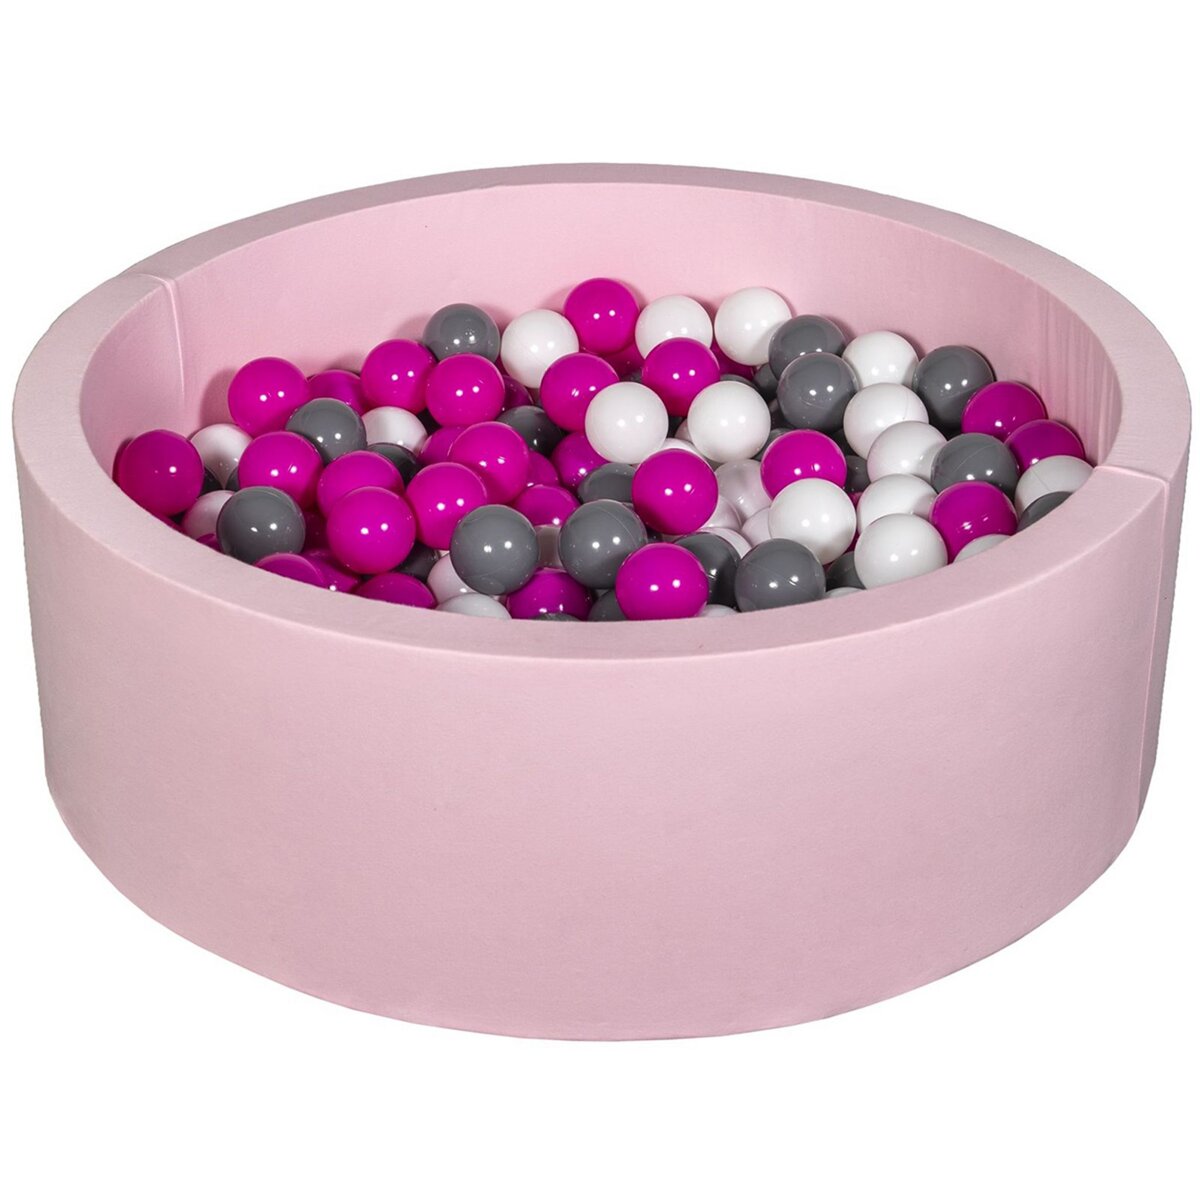  Piscine à balles Aire de jeu + 200 balles rose blanc,rose,gris